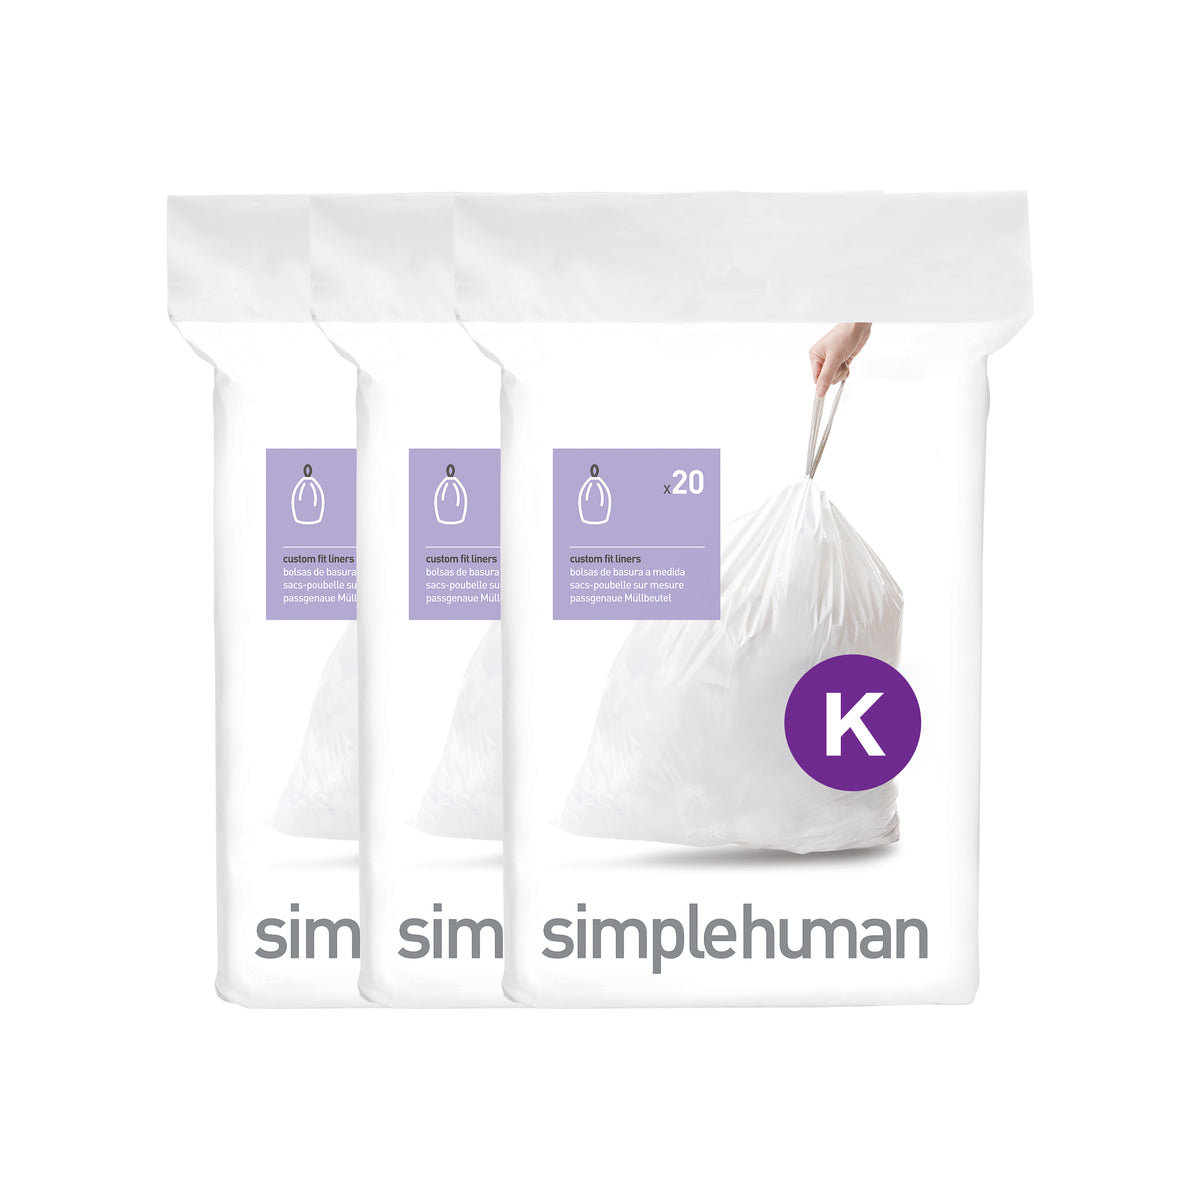 simplehuman custom fit liners - code K 60 pack